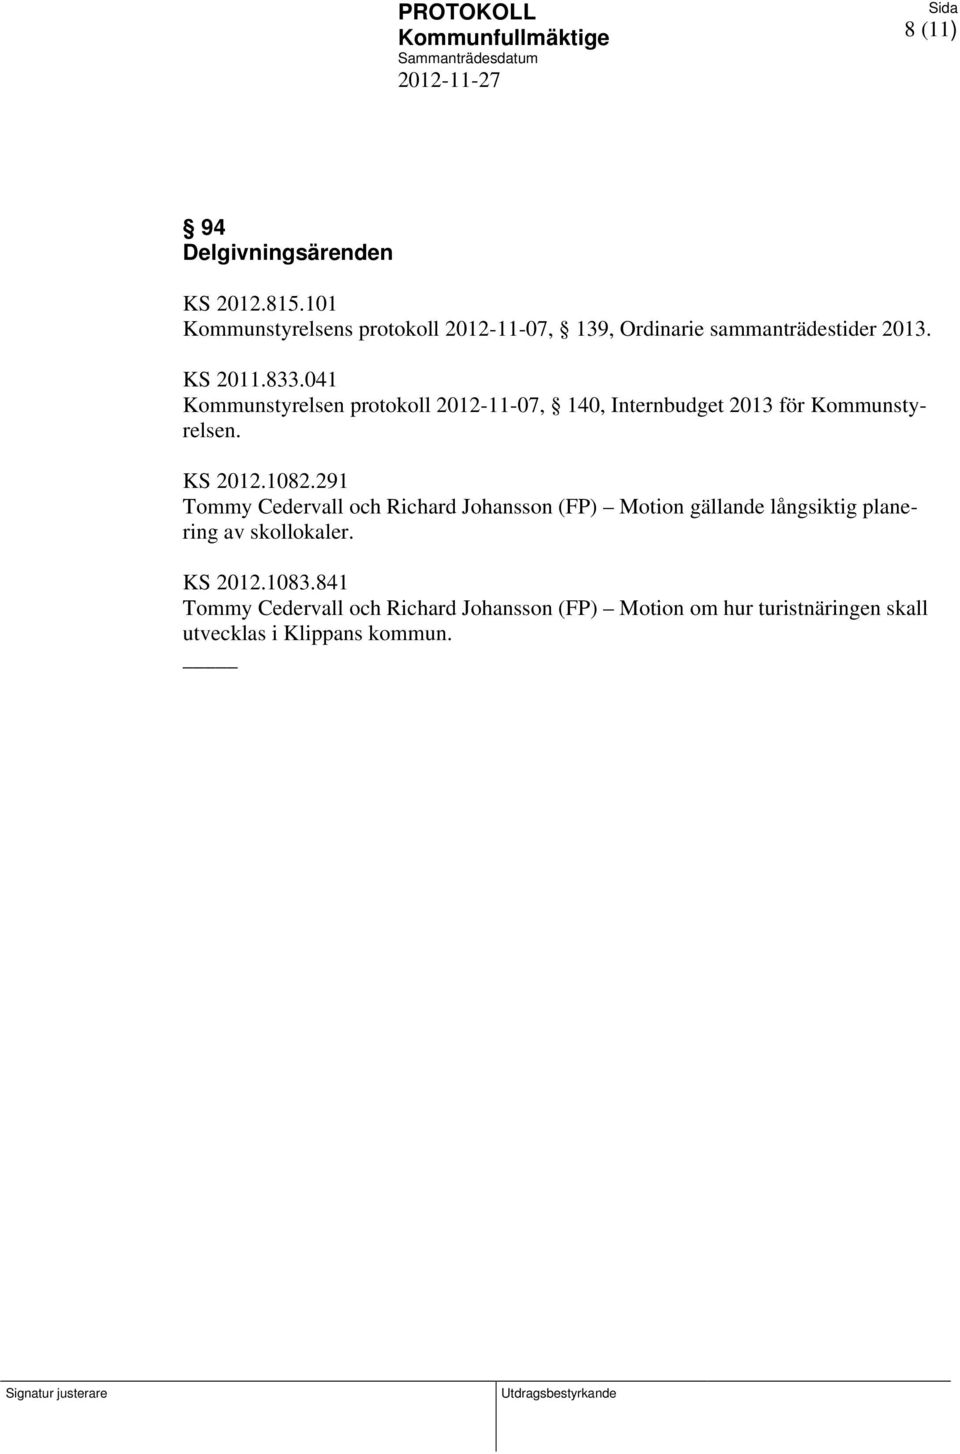 291 Tommy Cedervall och Richard Johansson (FP) Motion gällande långsiktig planering av skollokaler. KS 2012.1083.